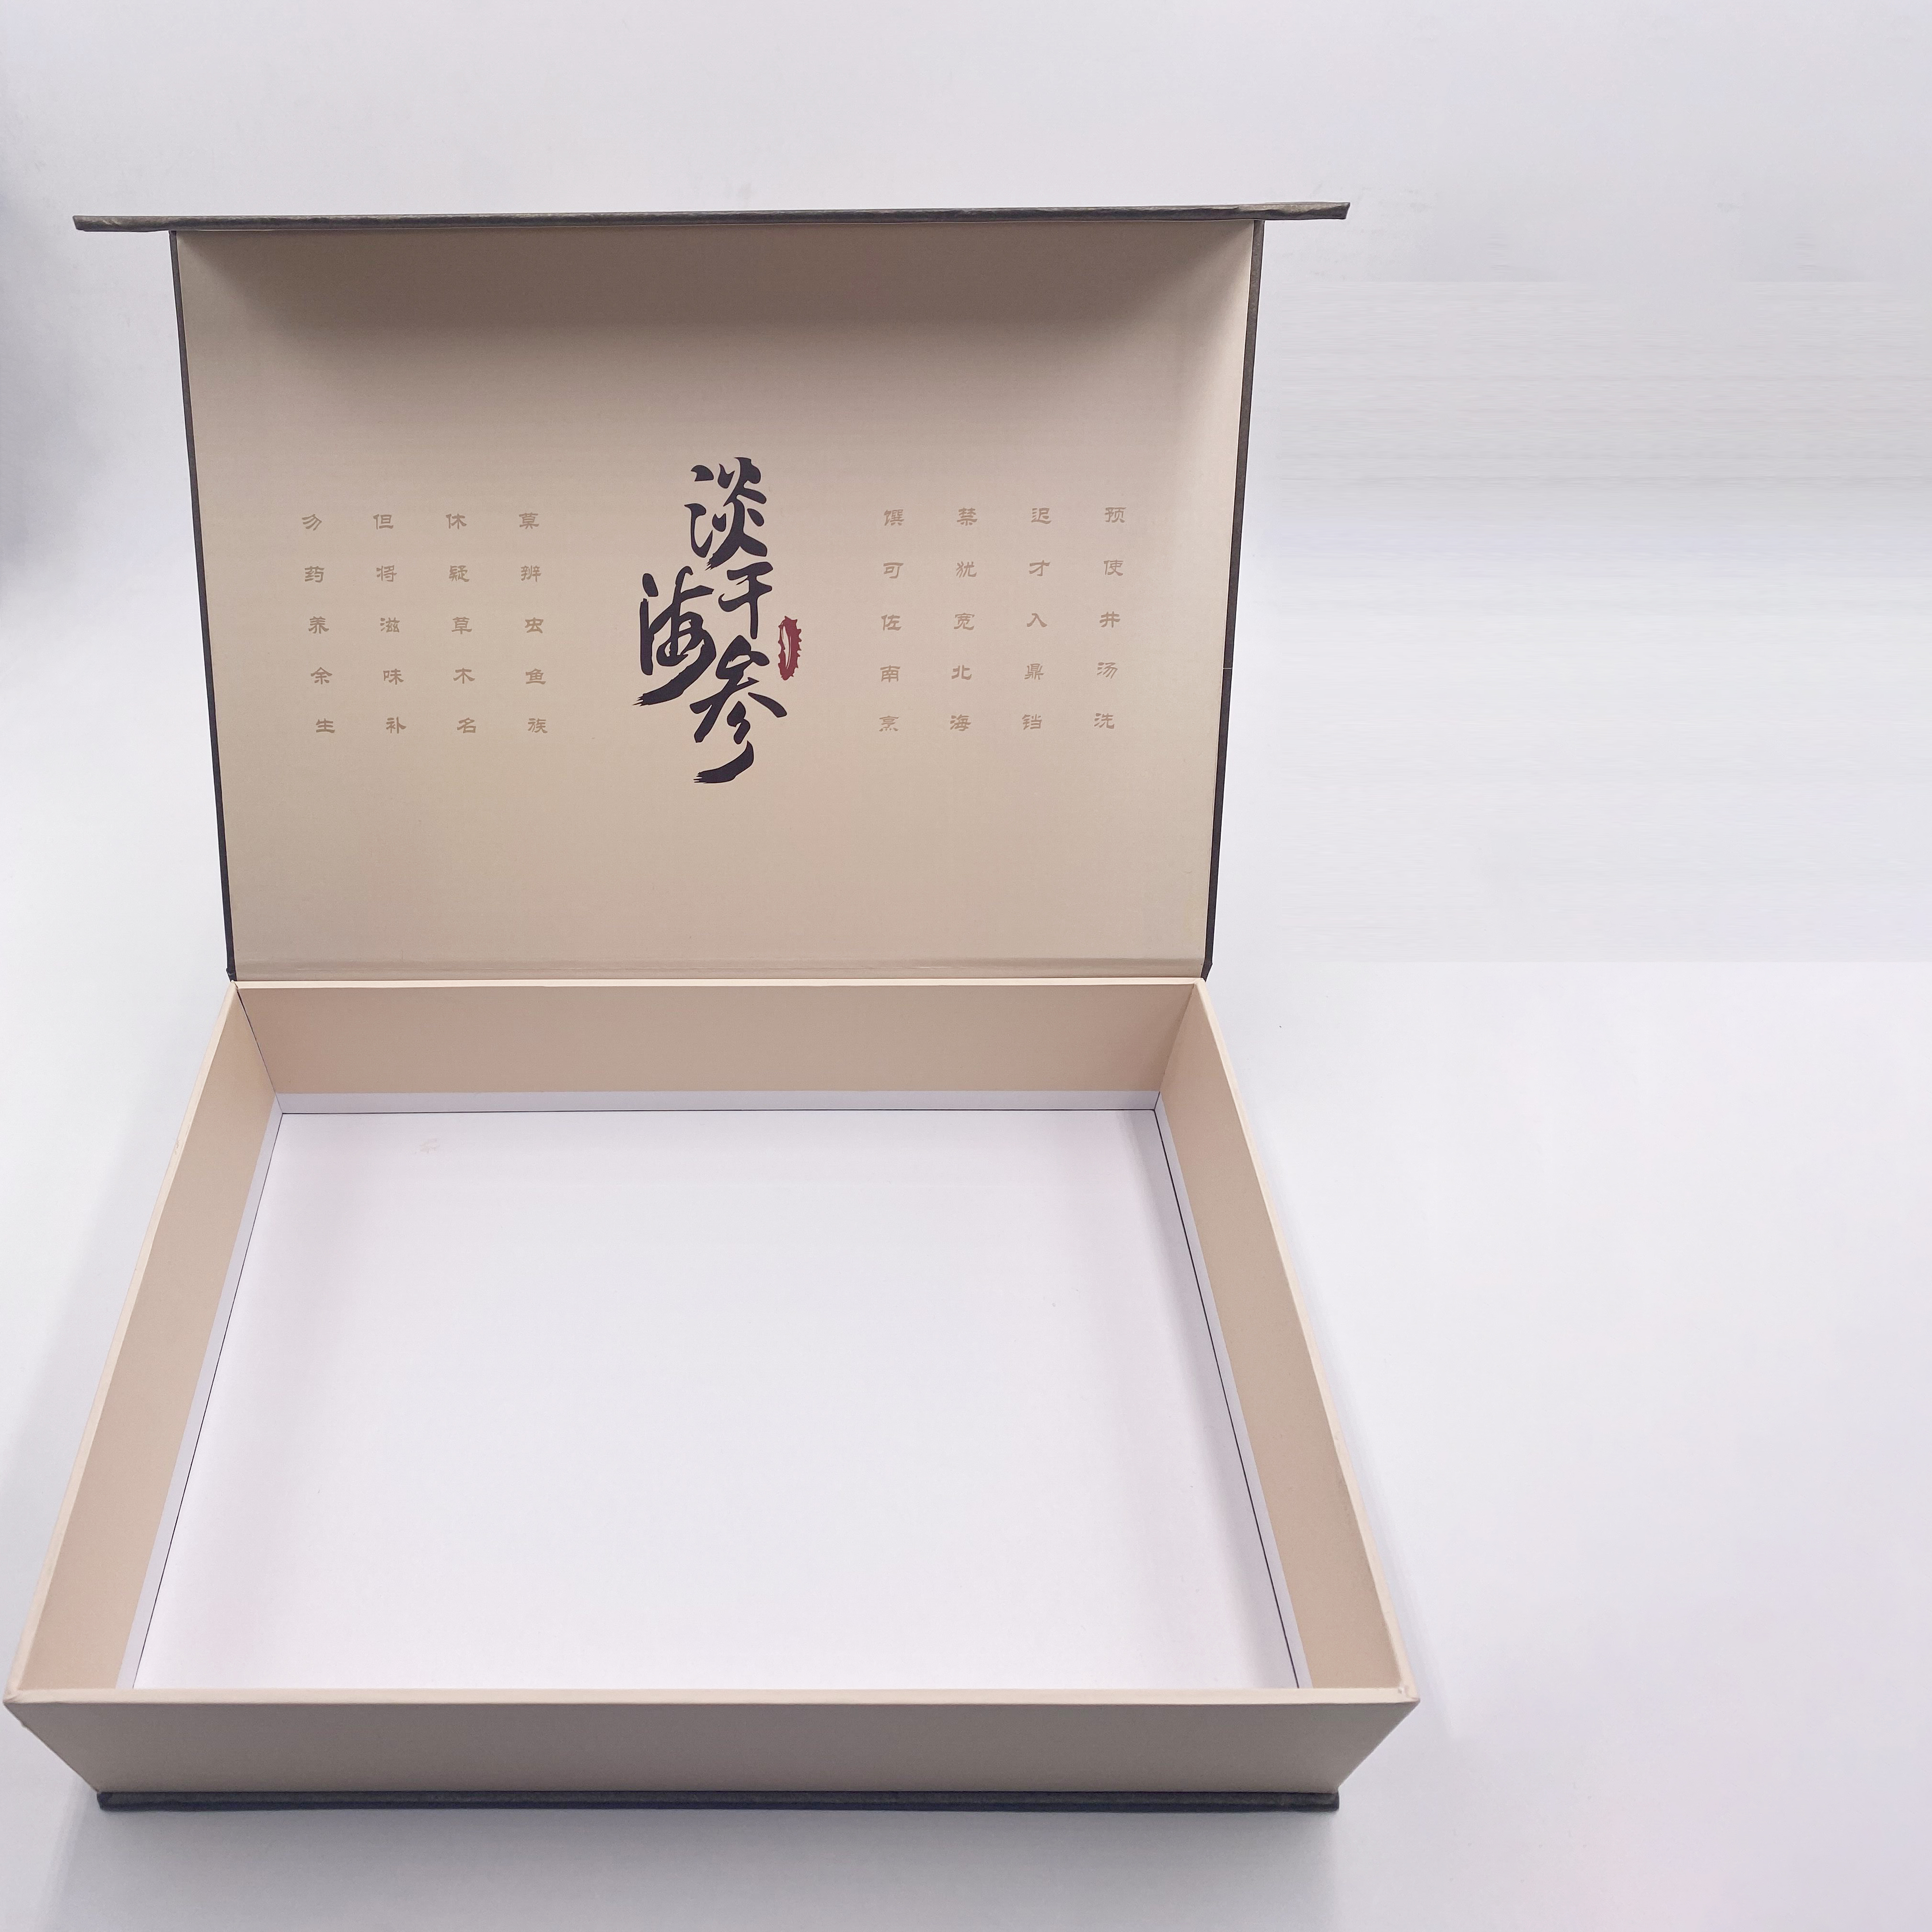 包装盒,常见成盒材料有灰底白卡纸,普通白卡纸,艺术纸包荷兰板;工艺